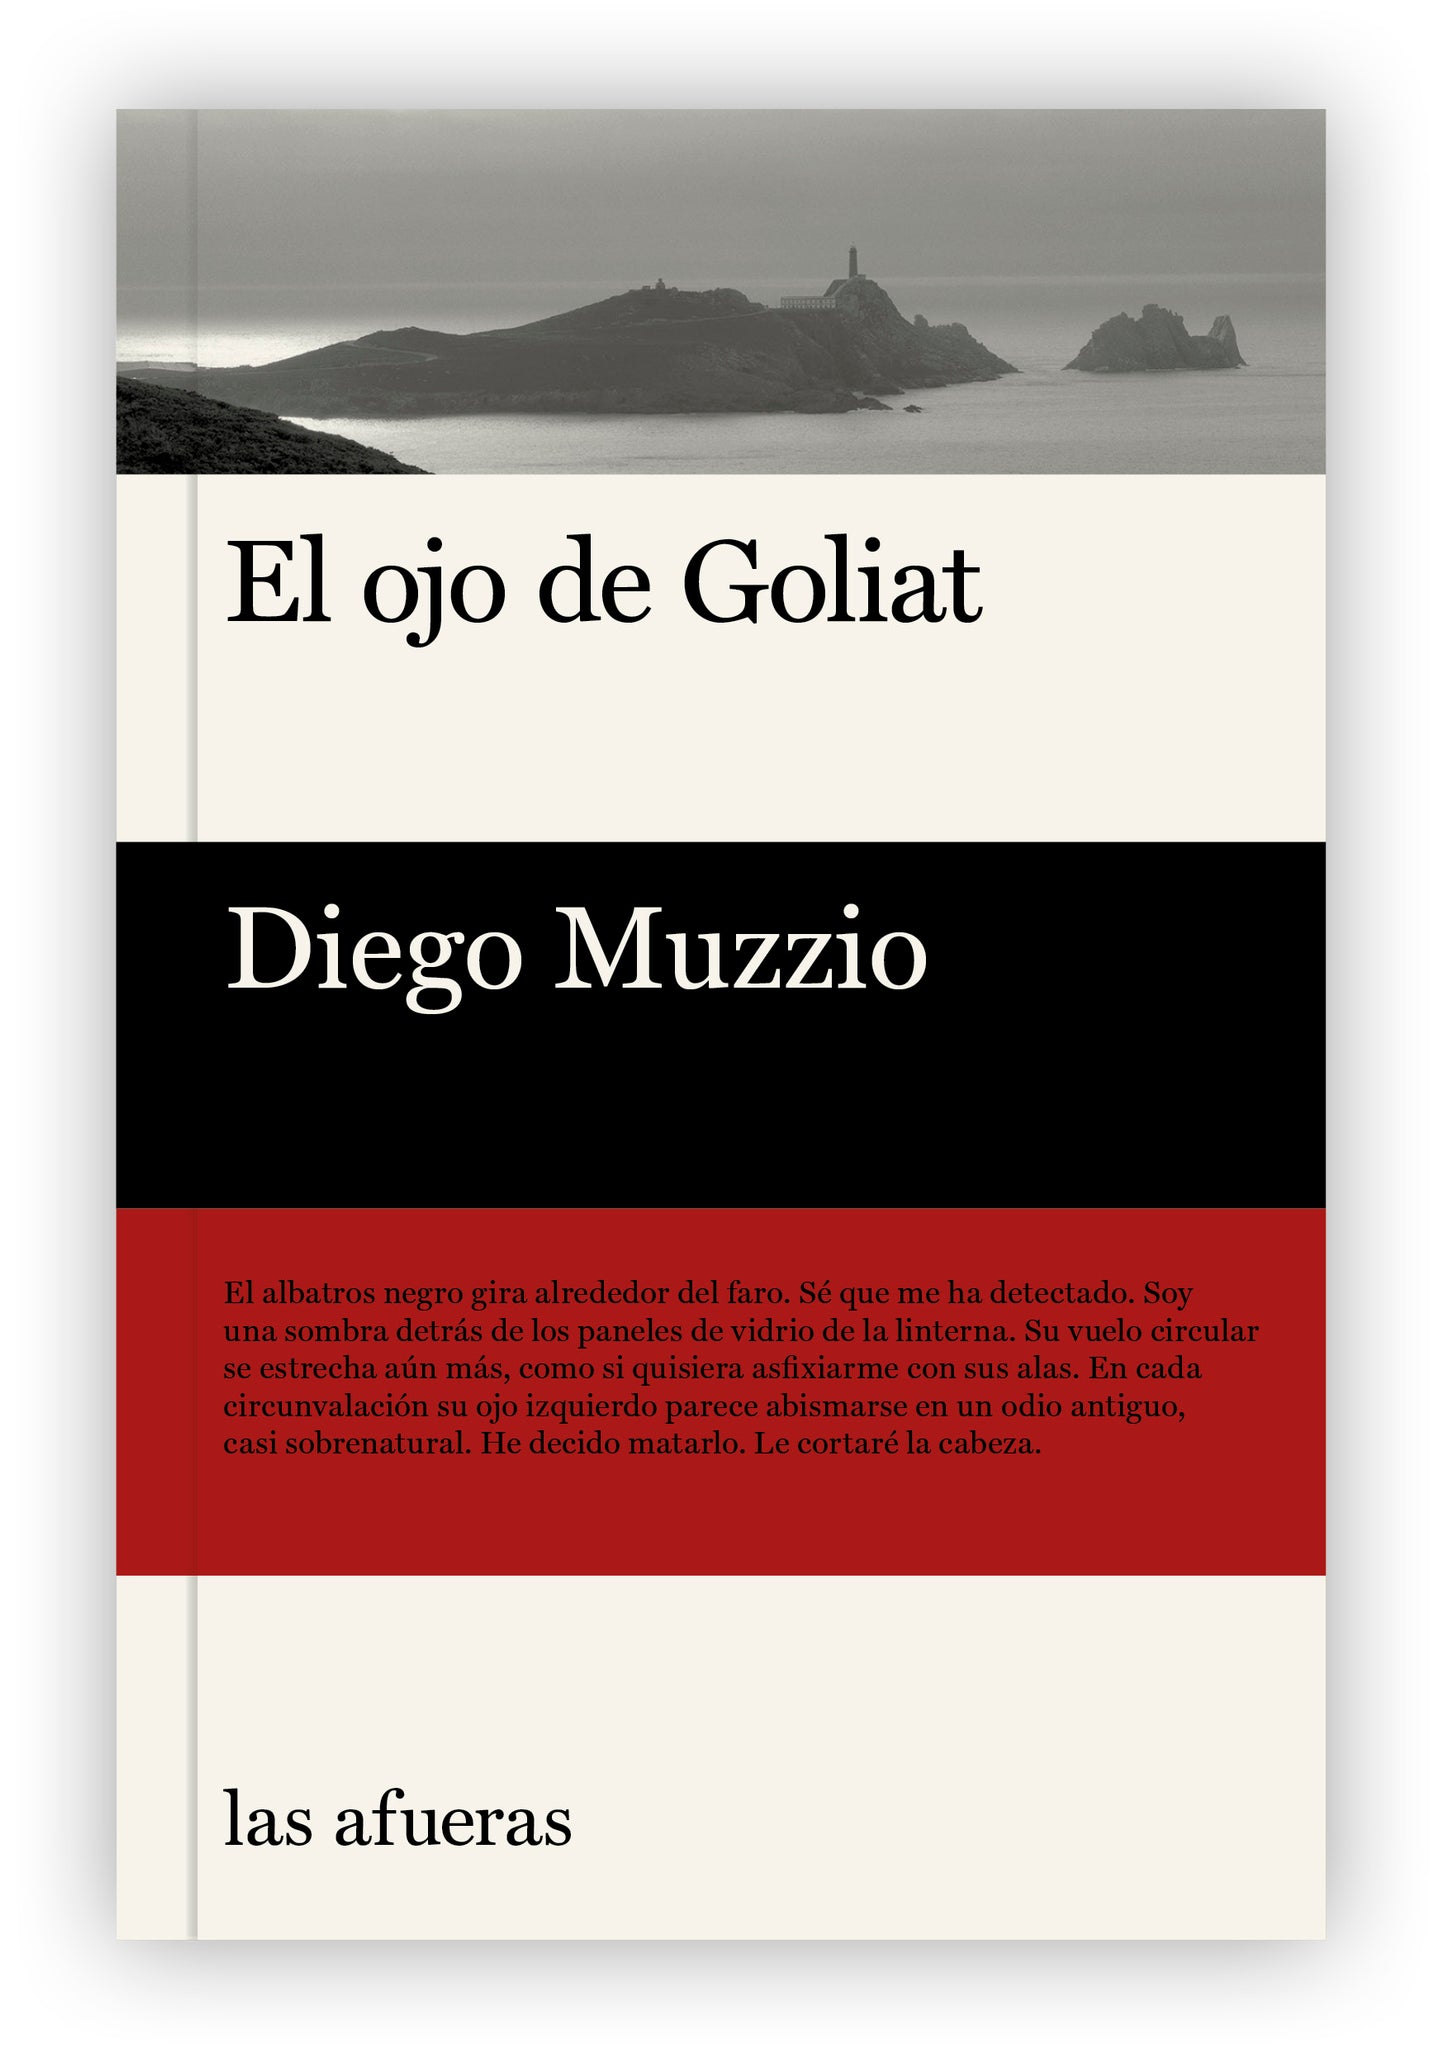 "El ojo de Goliat", de Diego Muzzio